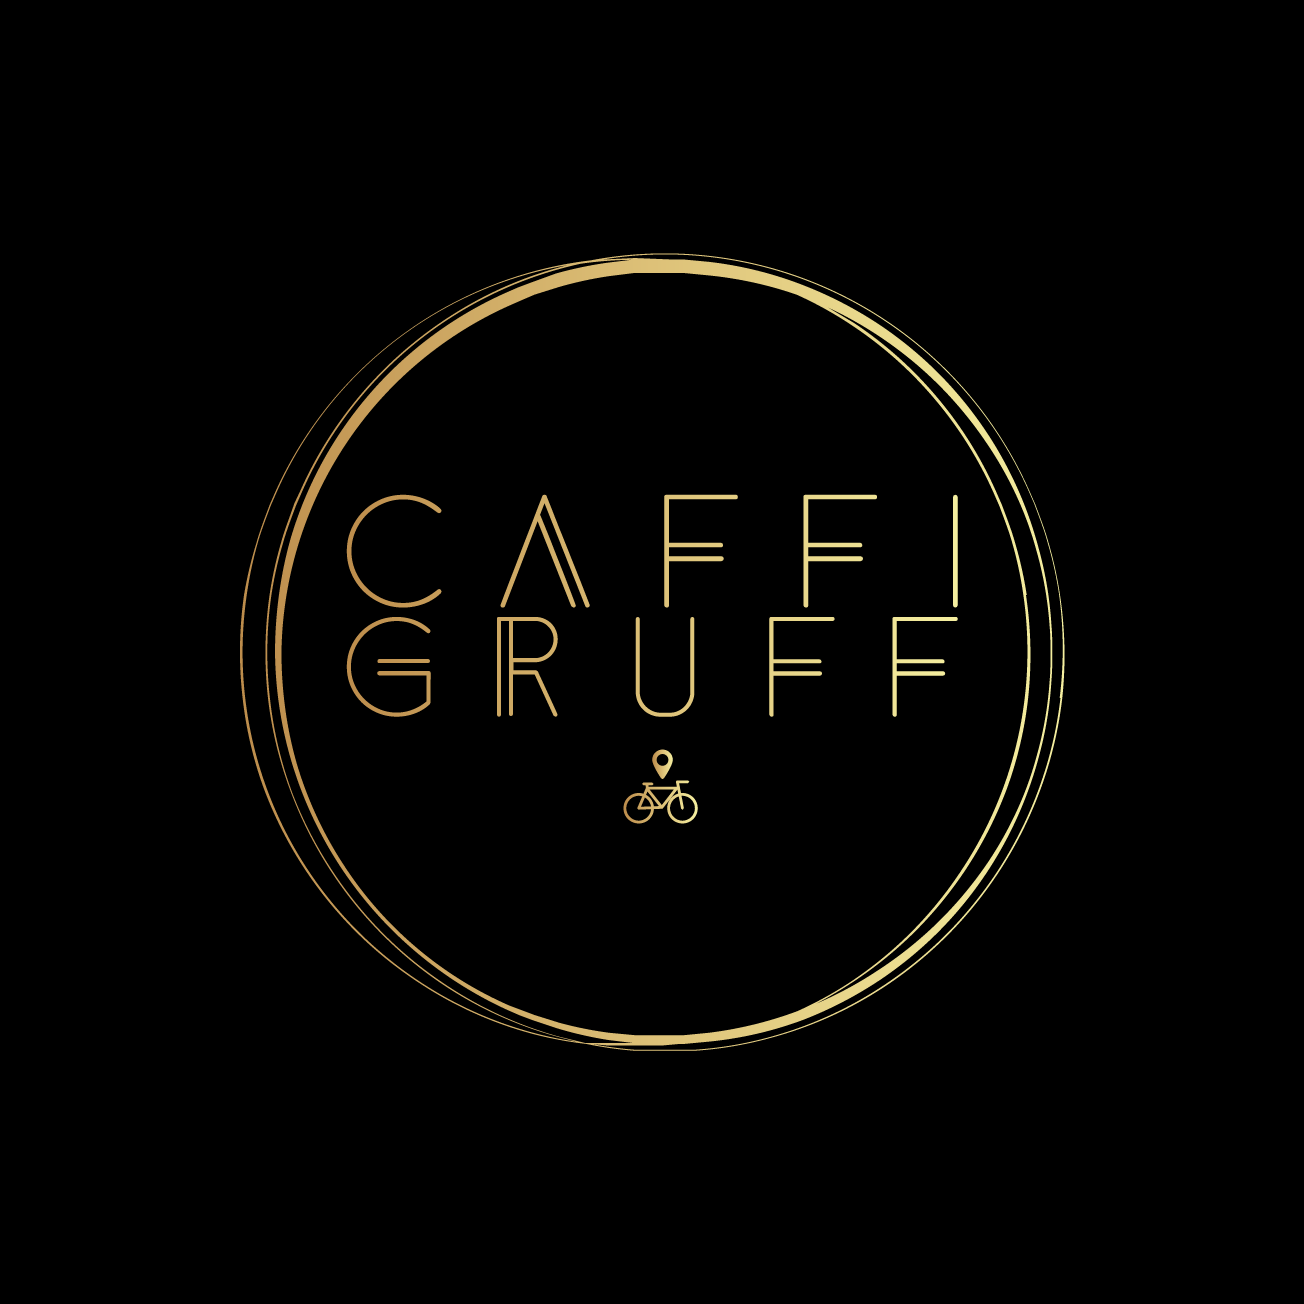 Club Image for CAFFI GRUFF